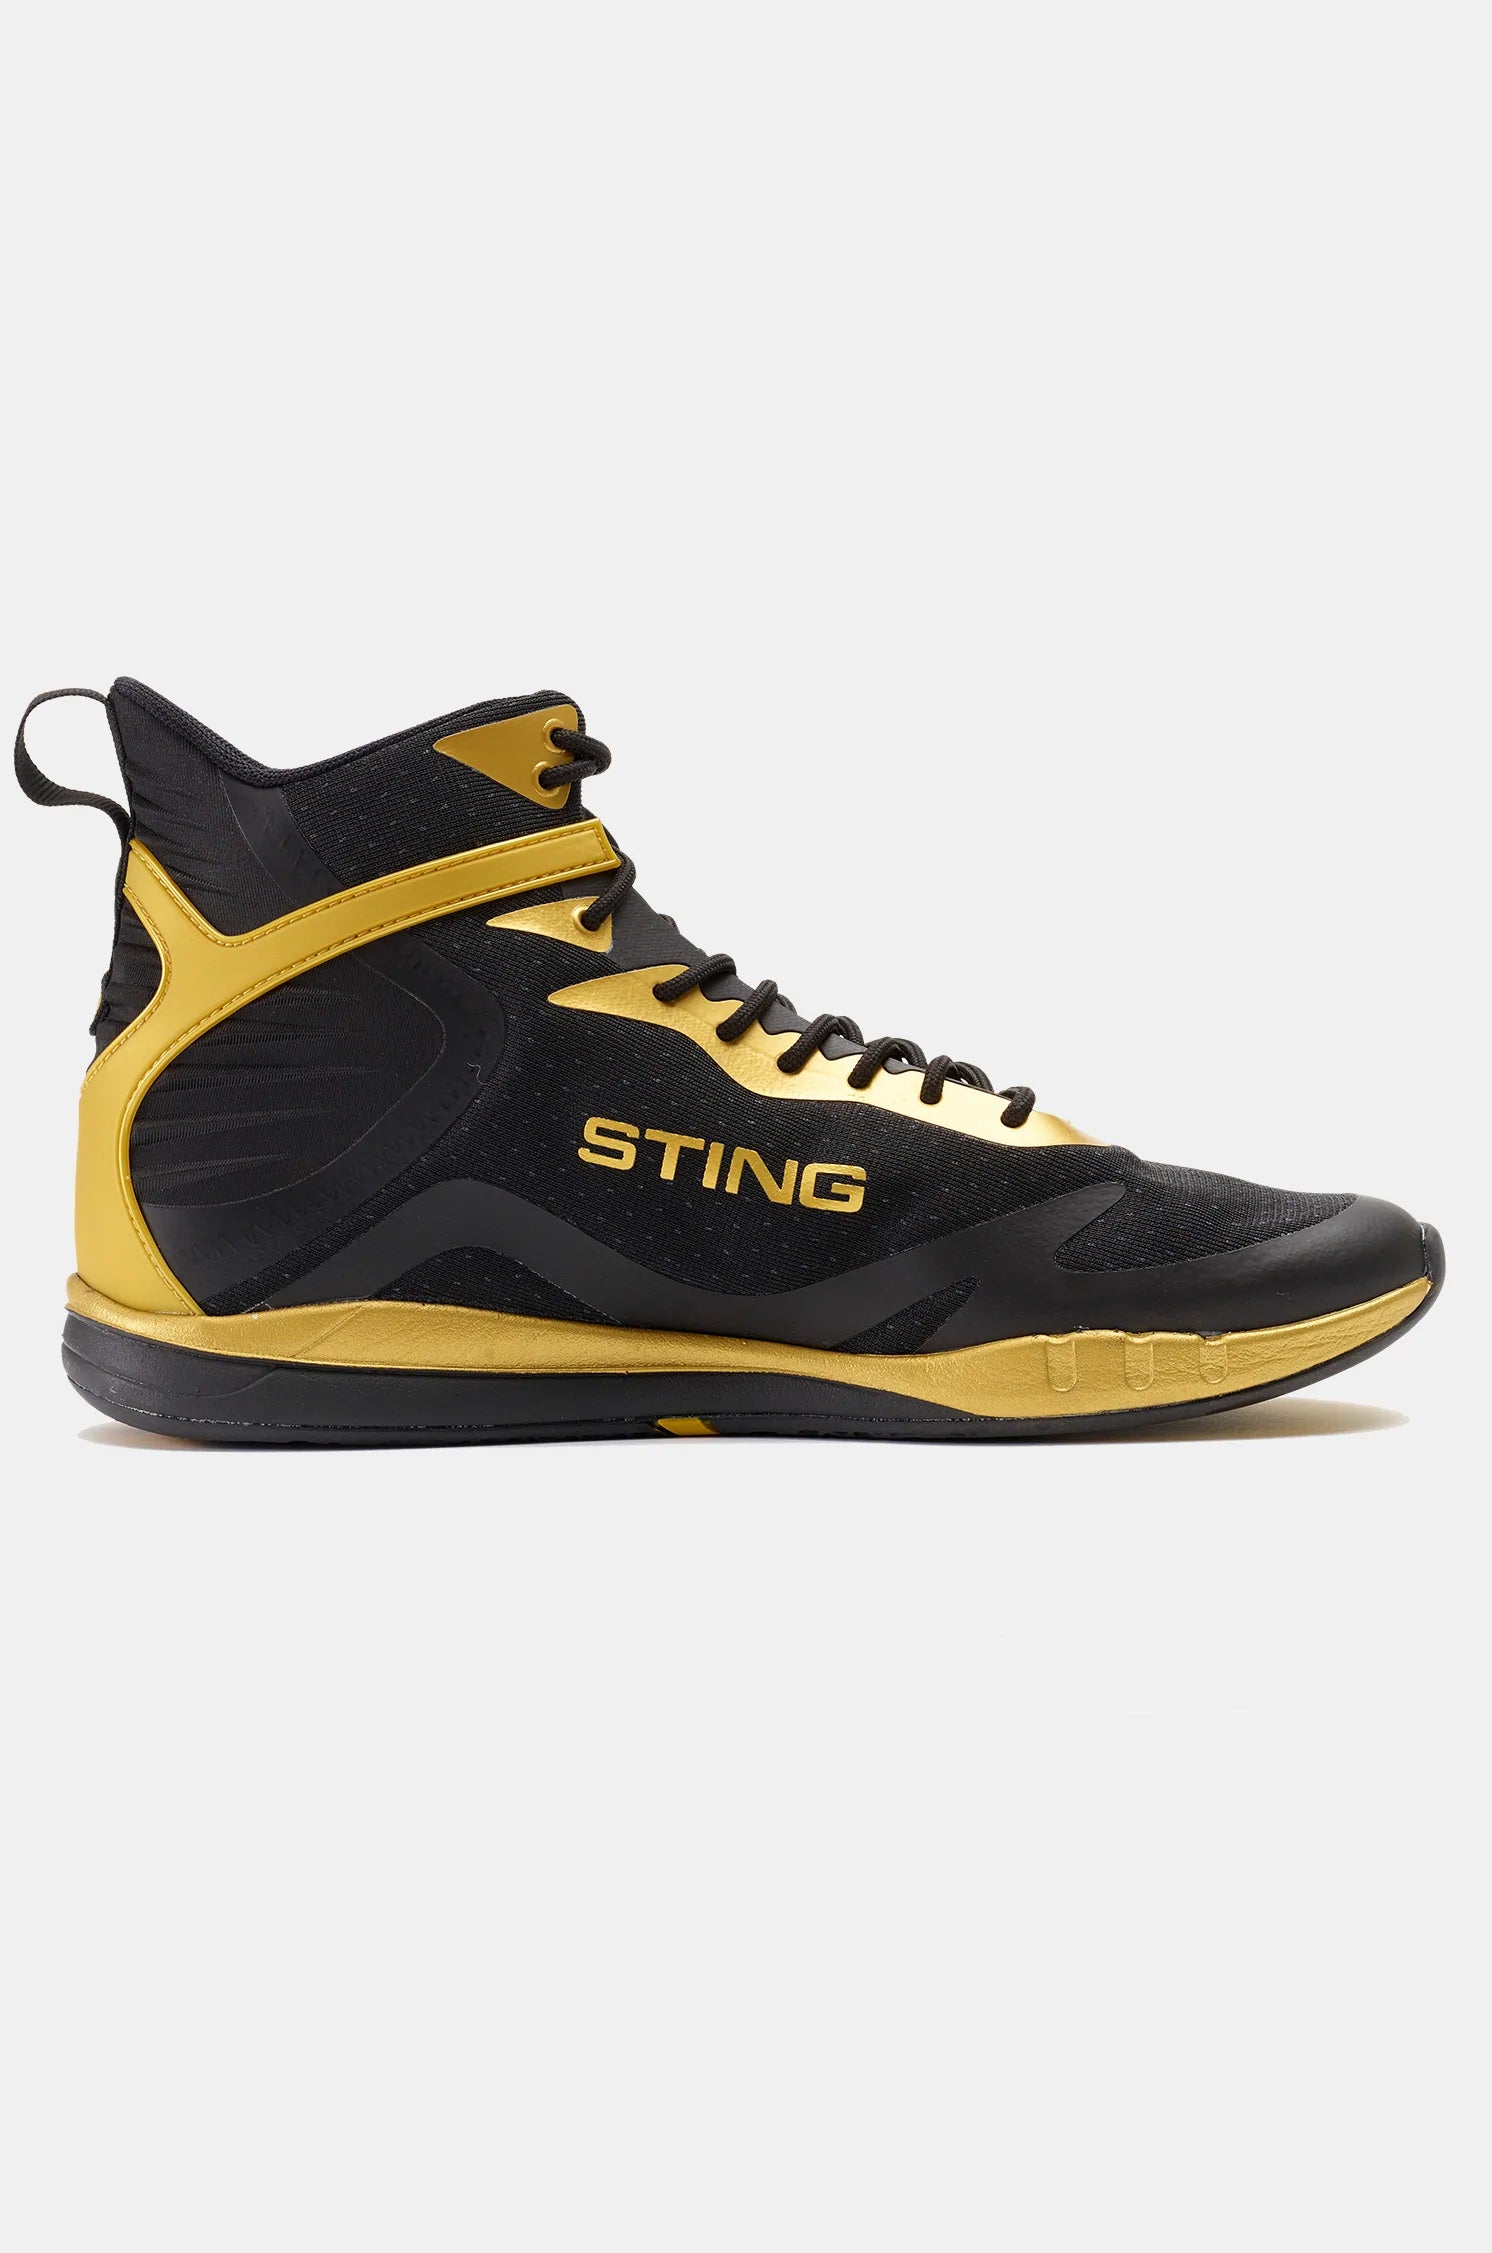 STING Viper Boxing Shoes Gold Black